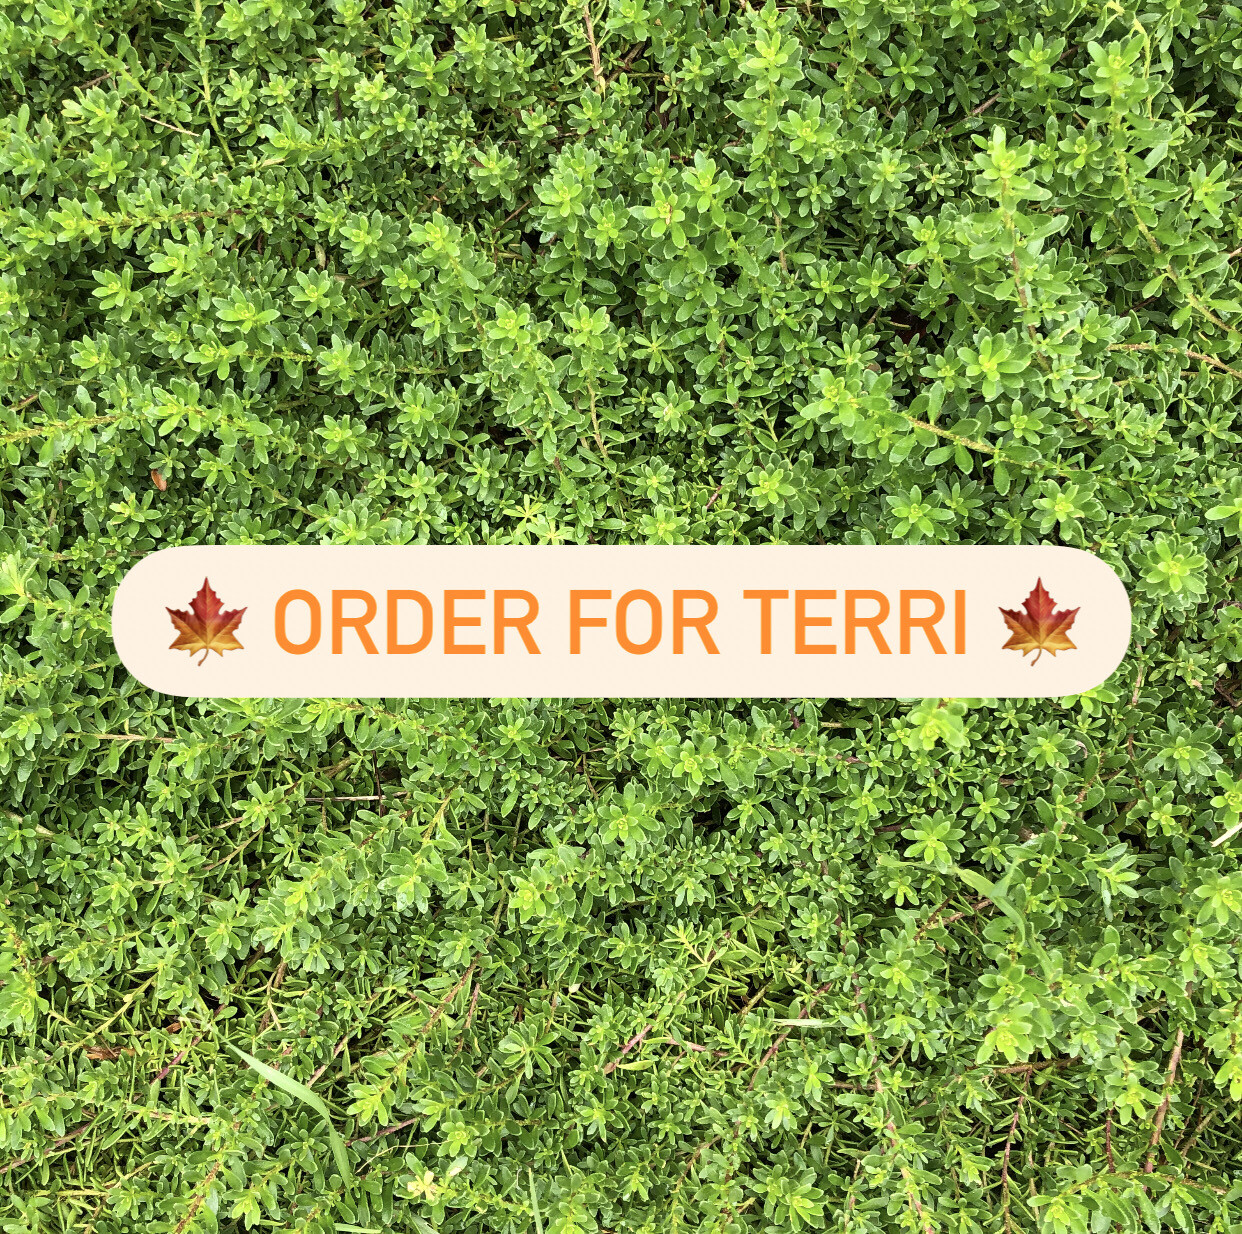 Order for Terri